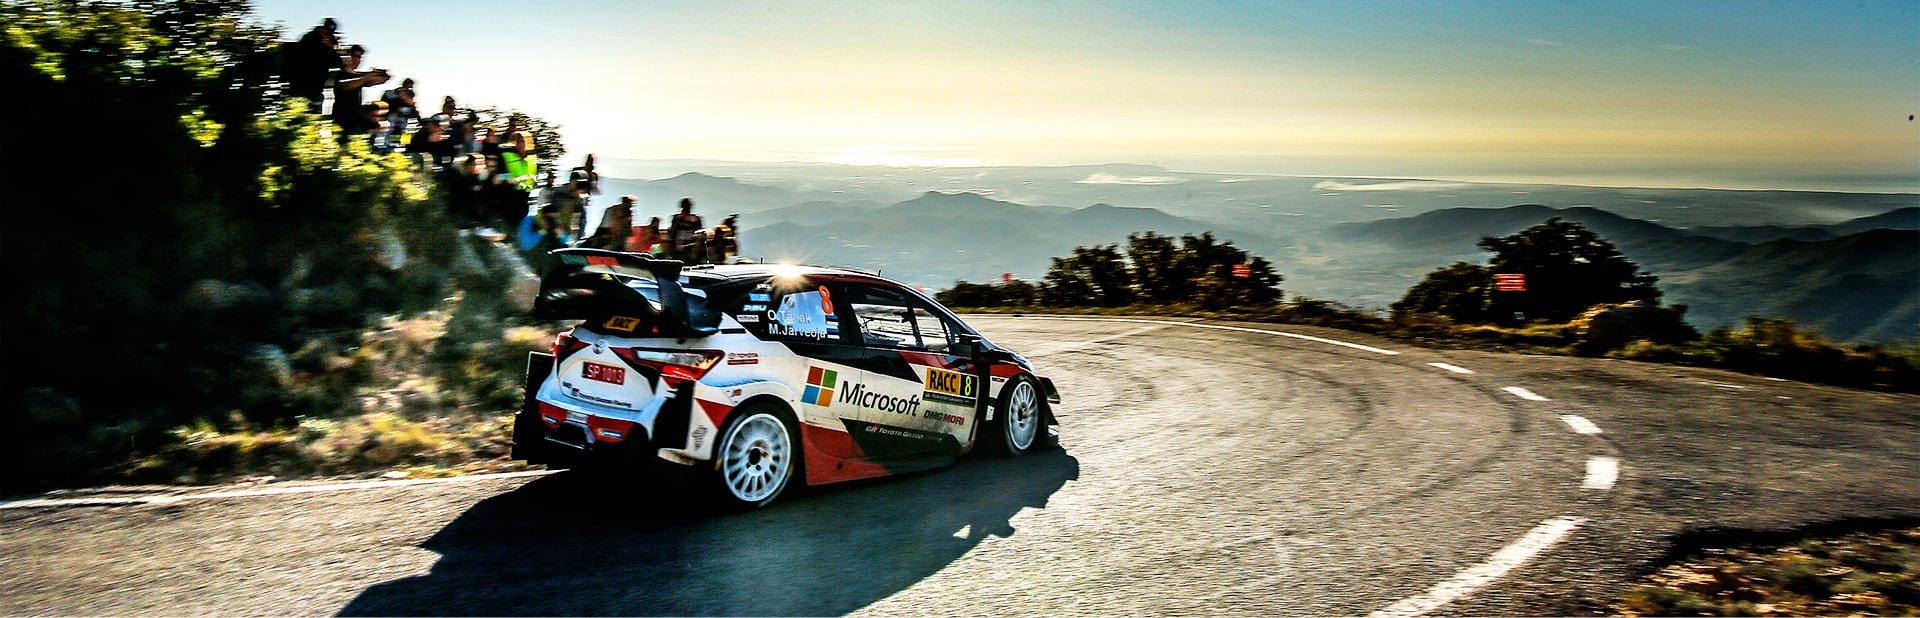 WRC 第13戦 ラリー・スペイン デイ3 タナックが総合2位でフィニッシュ パワーステージも制し初のドライバー王者に輝く